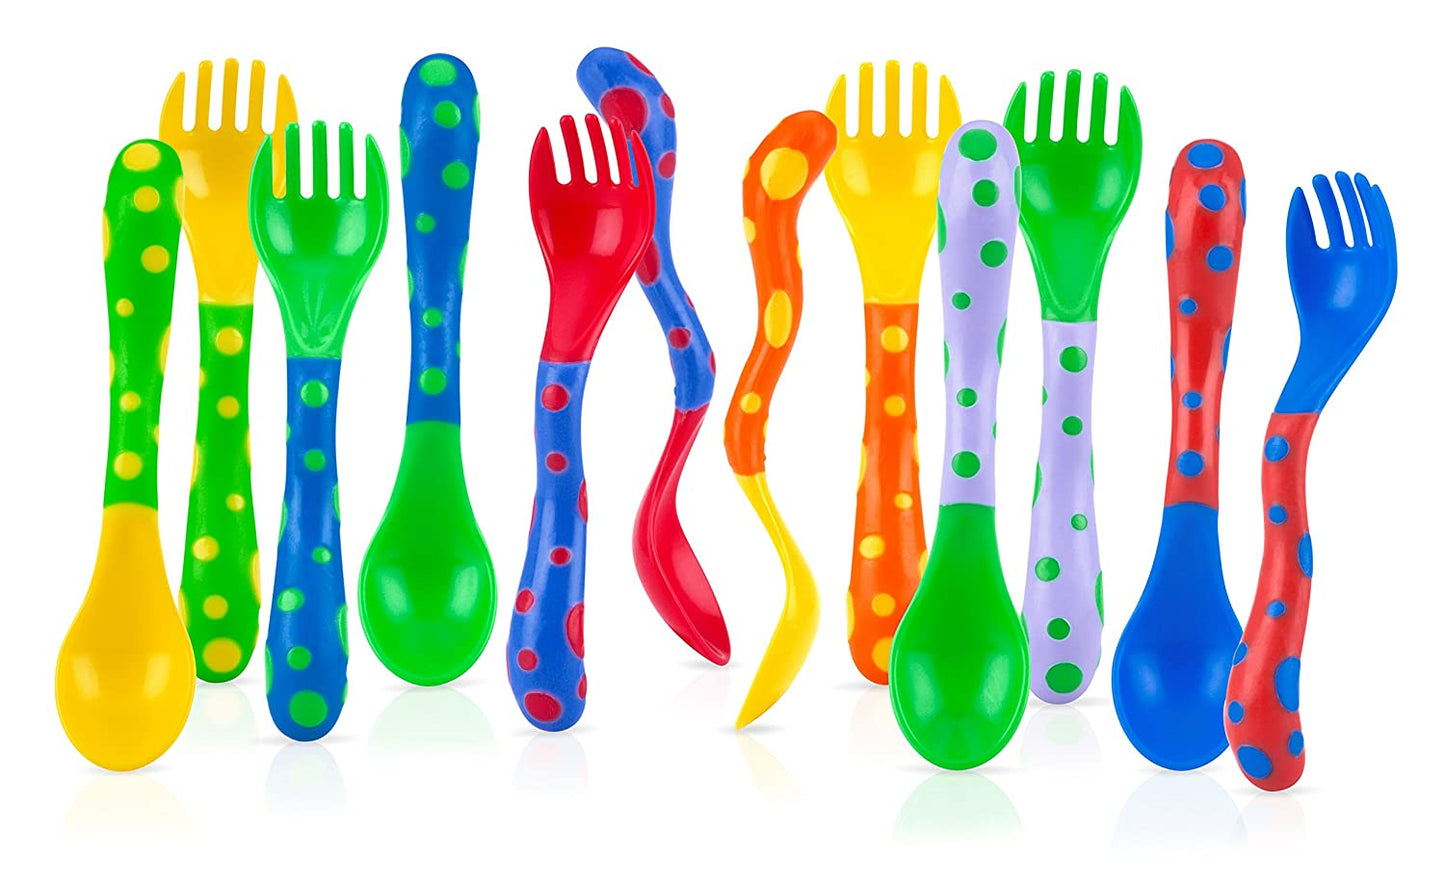 Nuby Fun Feeding Spoons & Forks